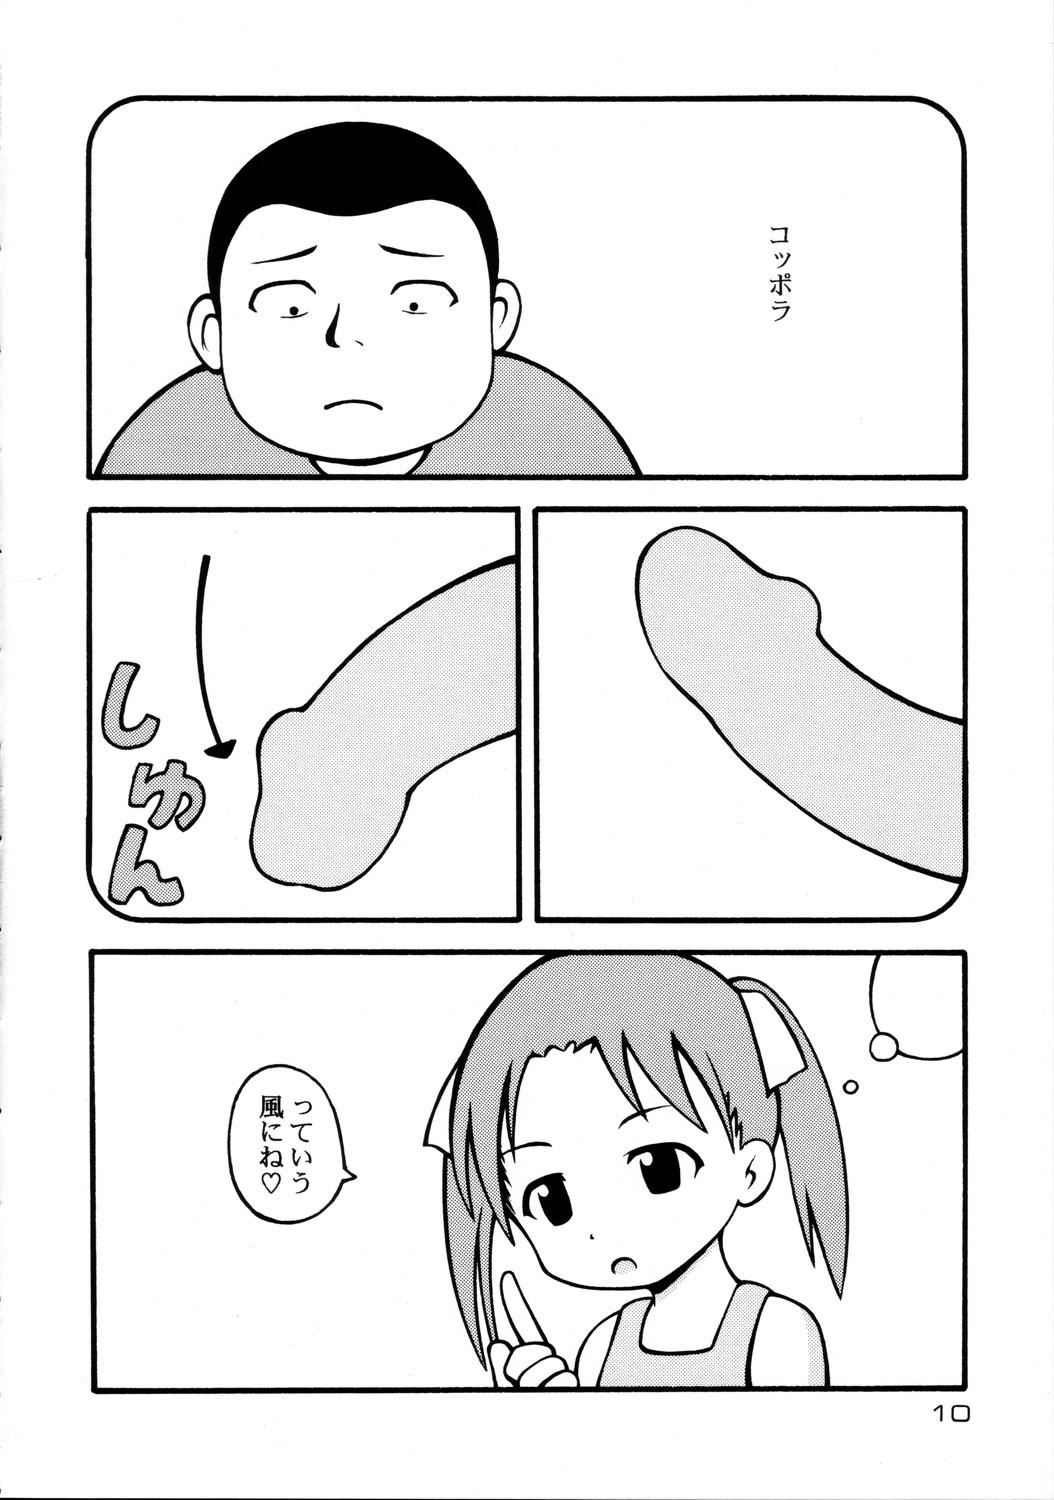 Mas Sorairo Mashimaro - Ichigo mashimaro Sex - Page 10